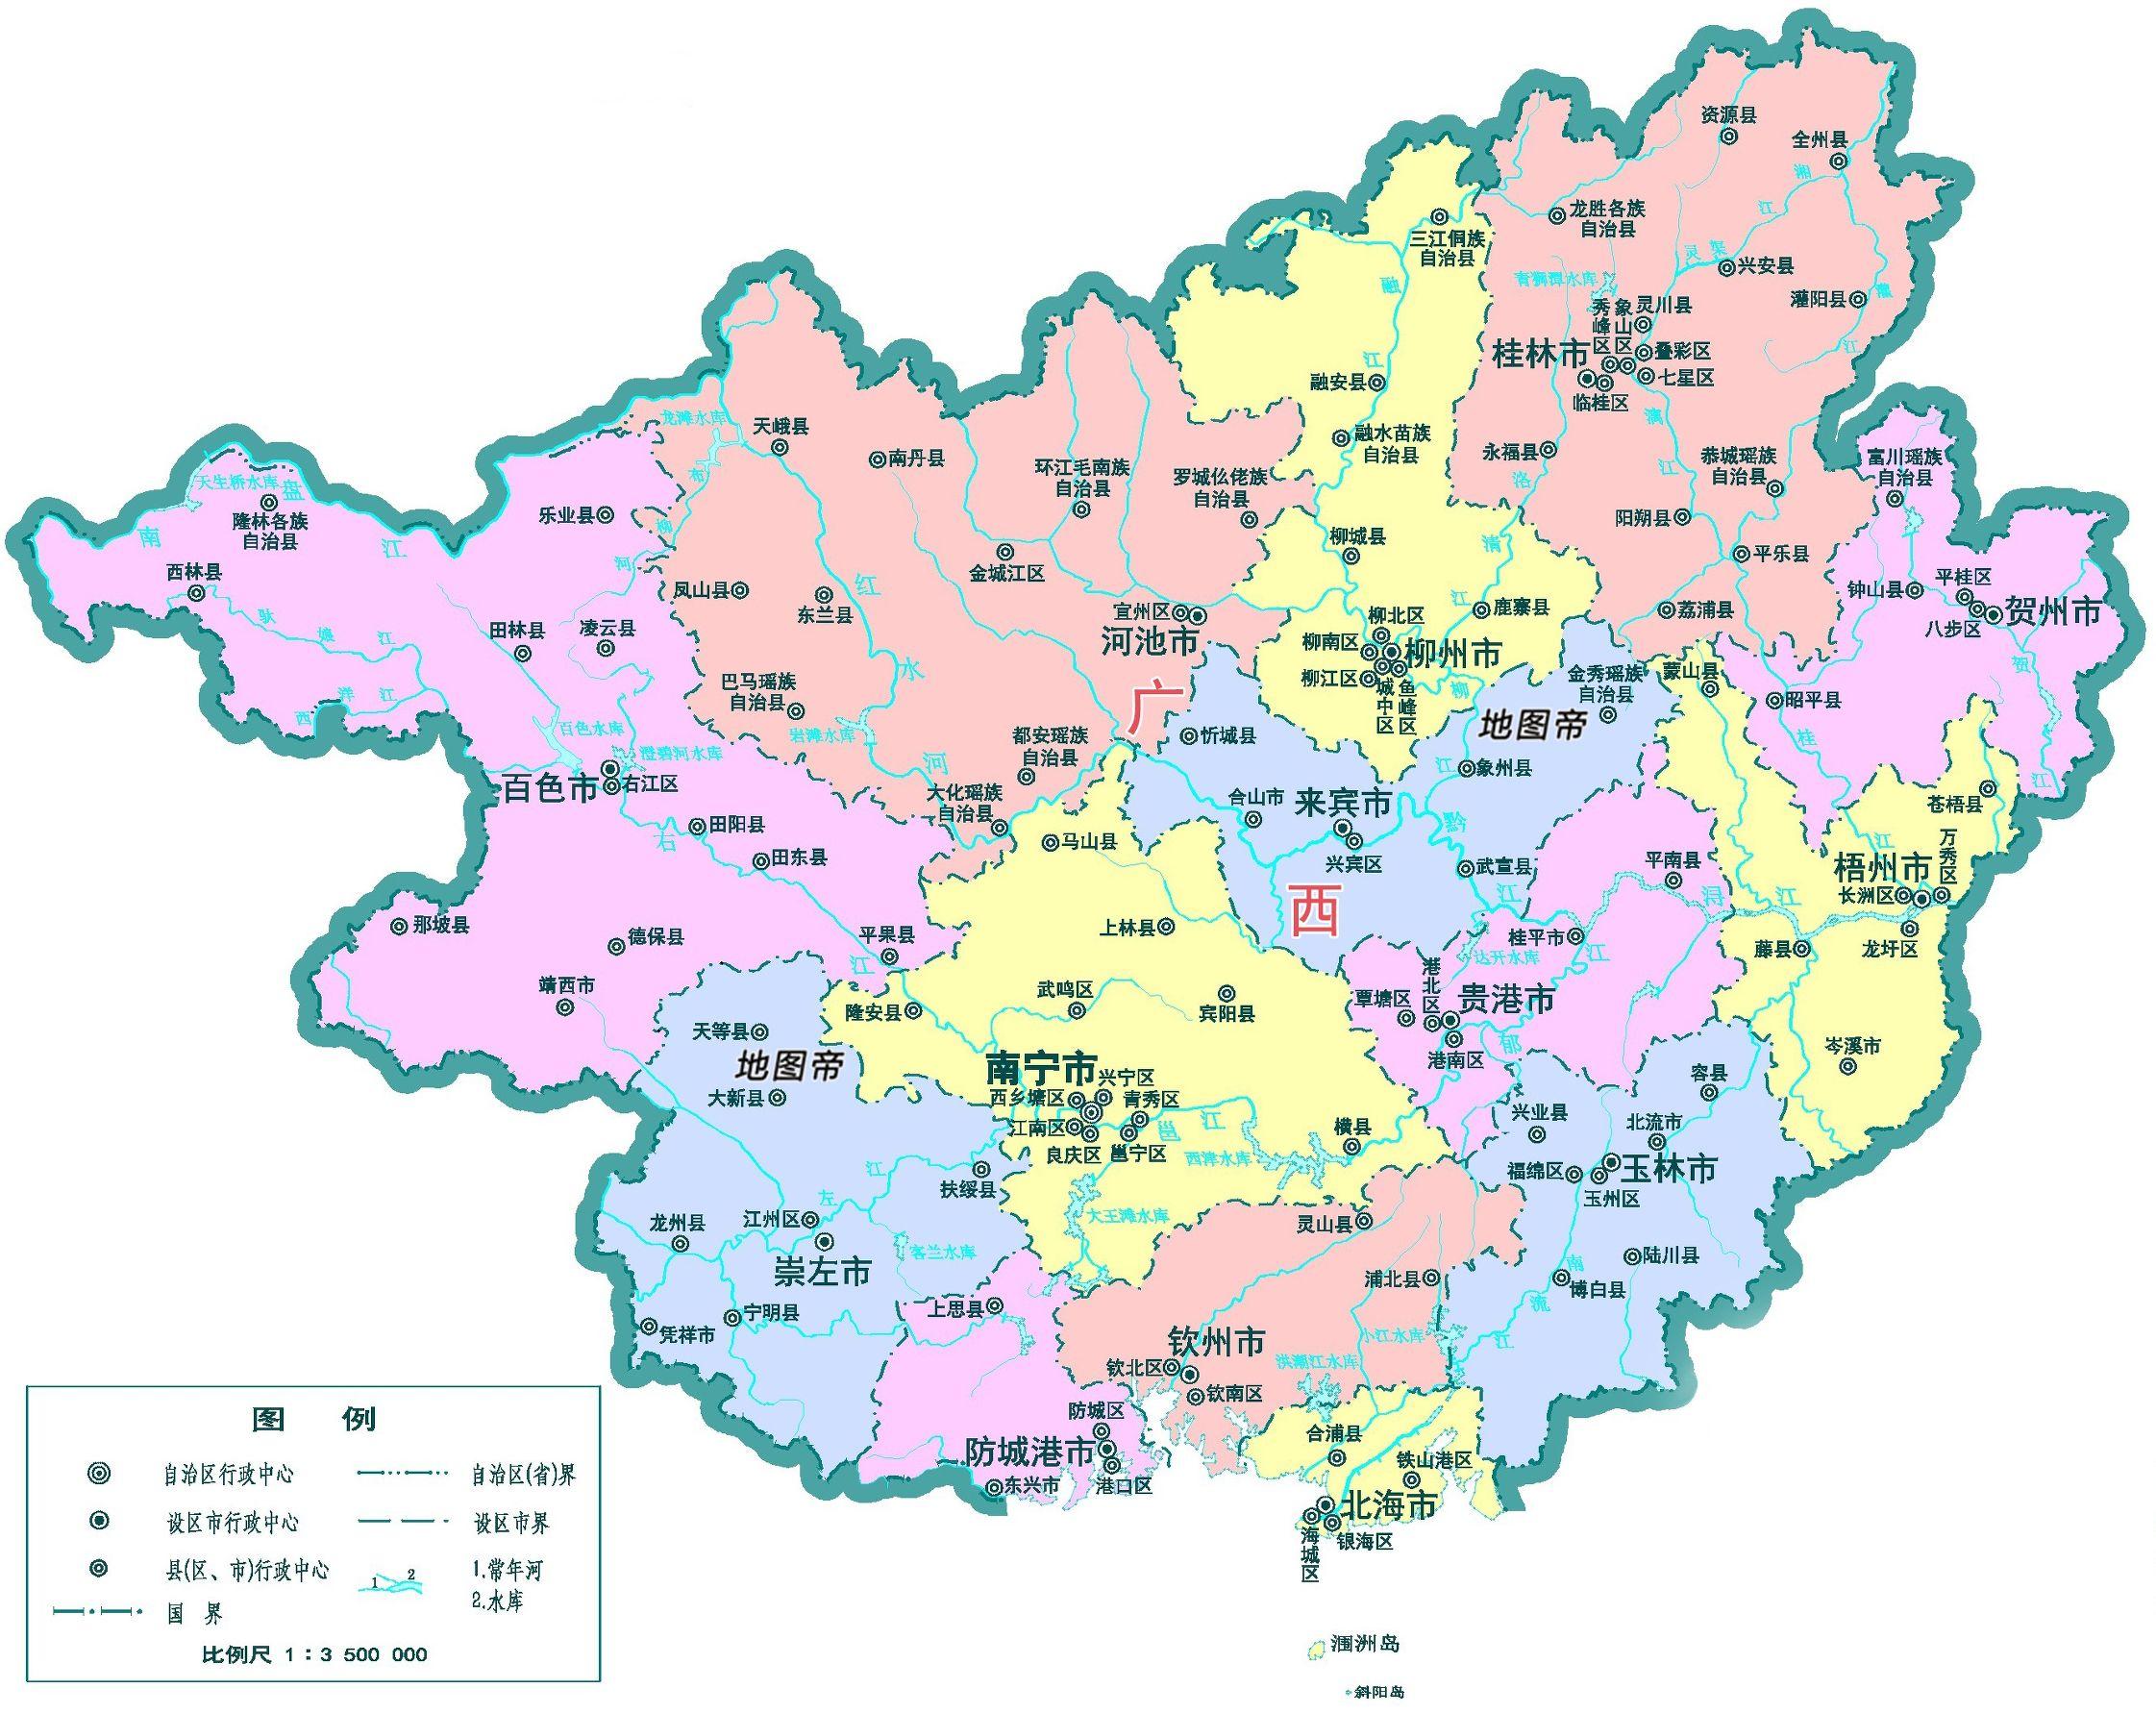 2018年,广西壮族自治区最新地图,中国 - 今日头